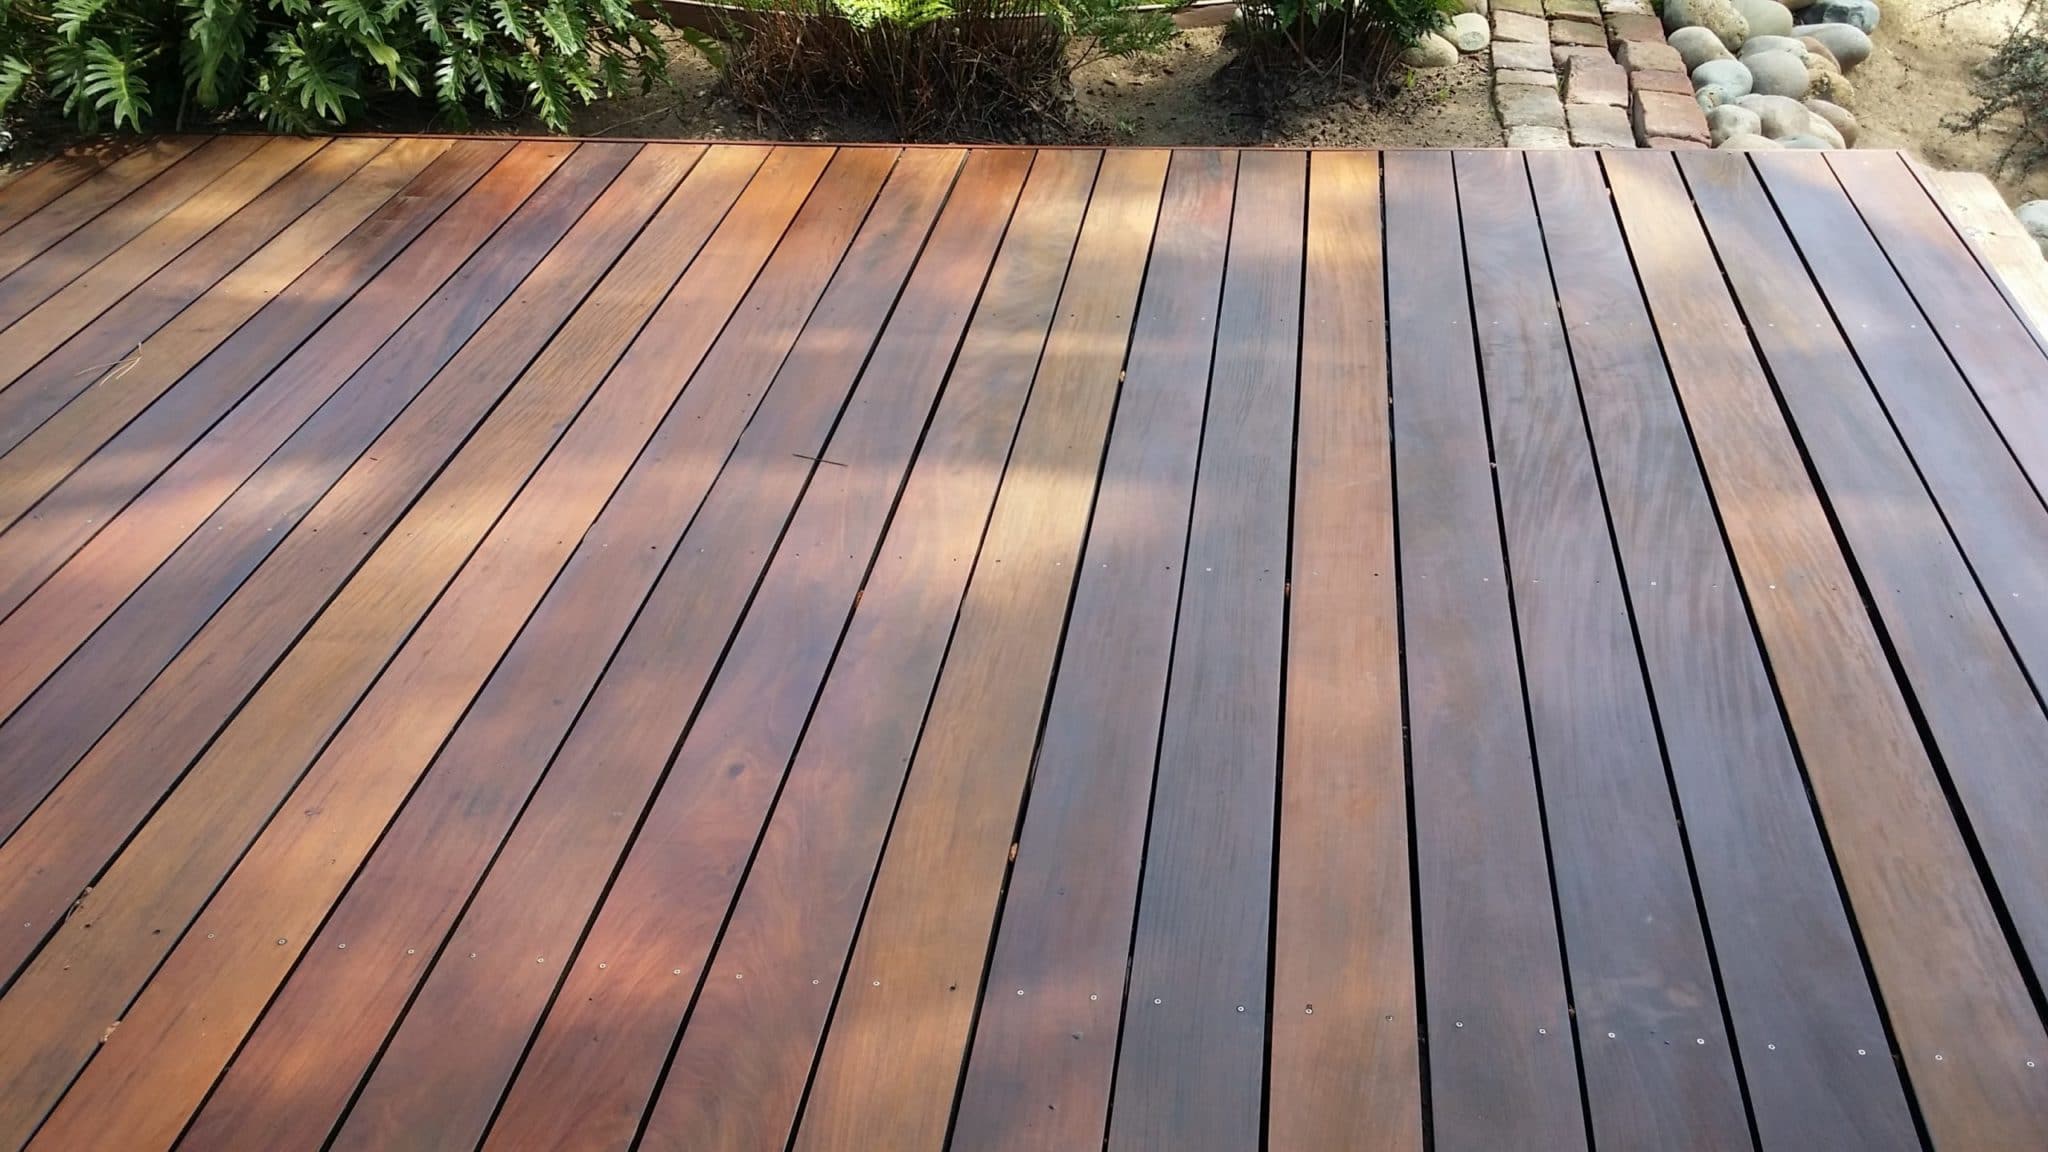 Wooden deck floor